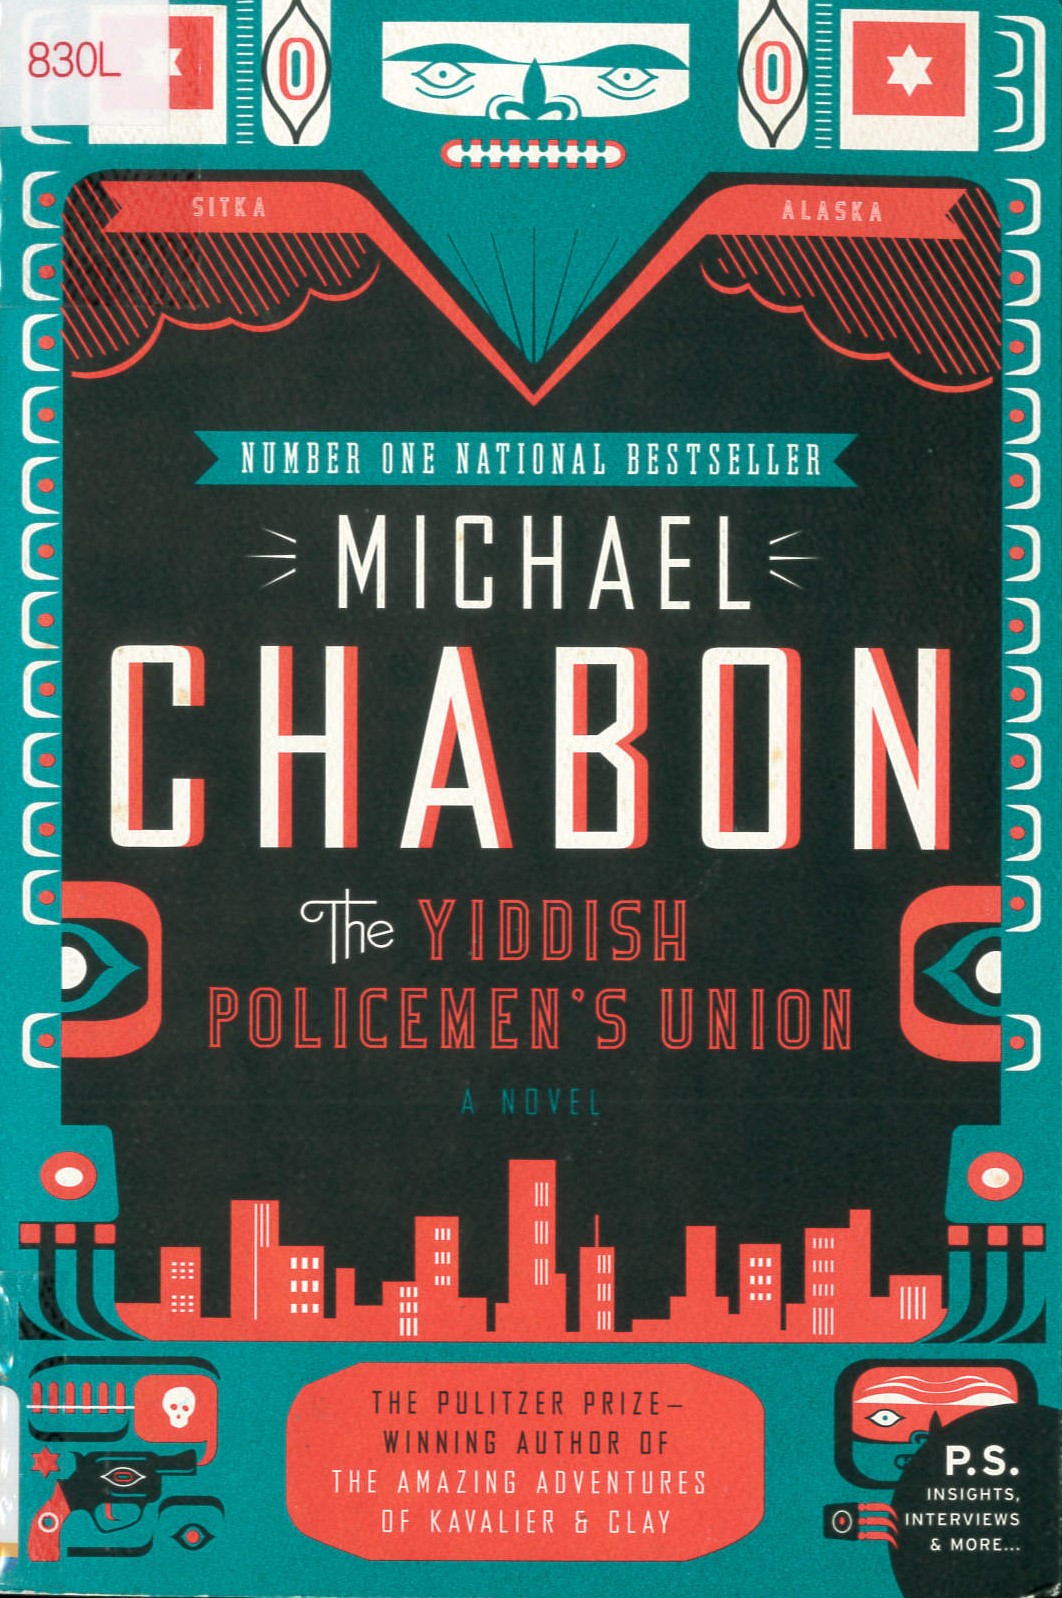 The Yiddish policemen